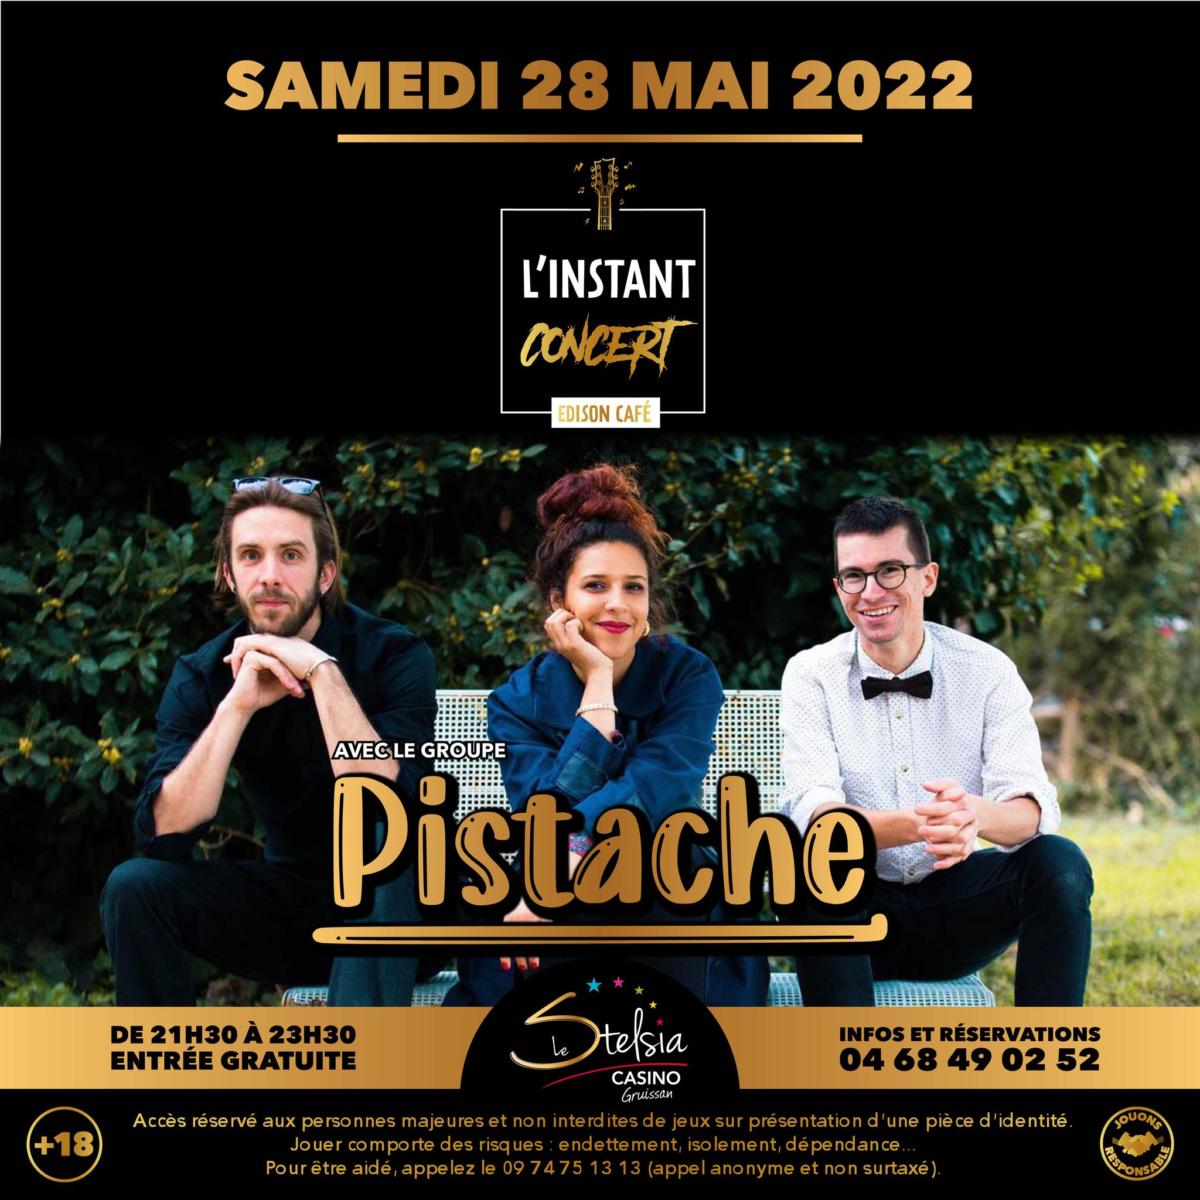 26-05-2022 : Martin, membre du Pistache Trio en concert ce samedi 28 mai, à l’Édison Café du Stelsia Casino de Gruissan.